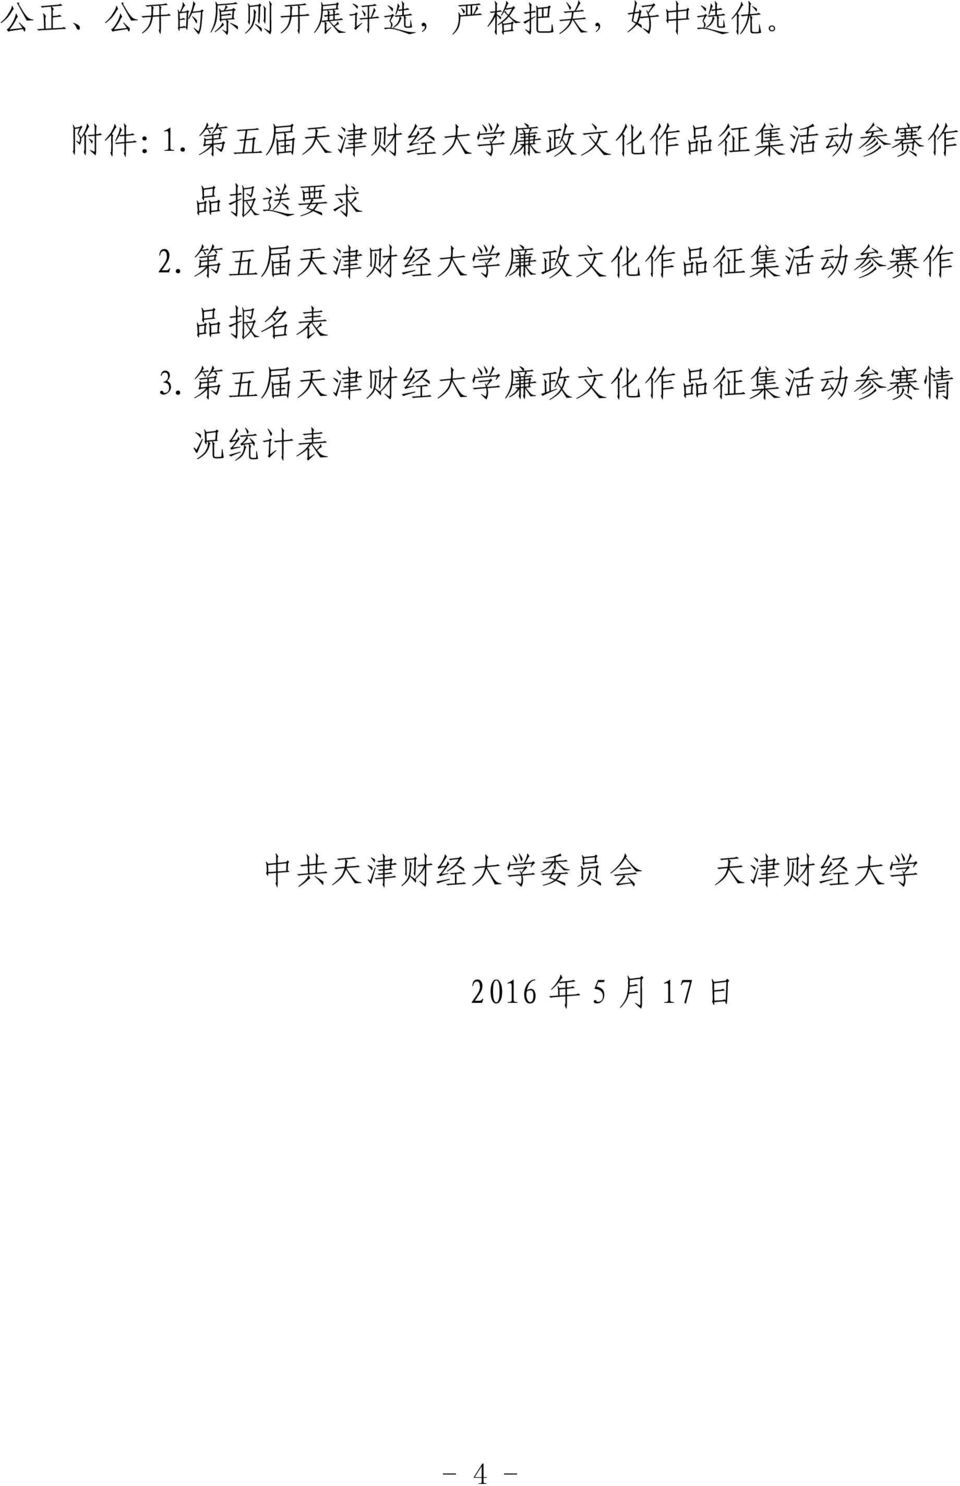 第 五 届 天 津 财 经 大 学 廉 政 文 化 作 品 征 集 活 动 参 赛 作 品 报 名 表 3.